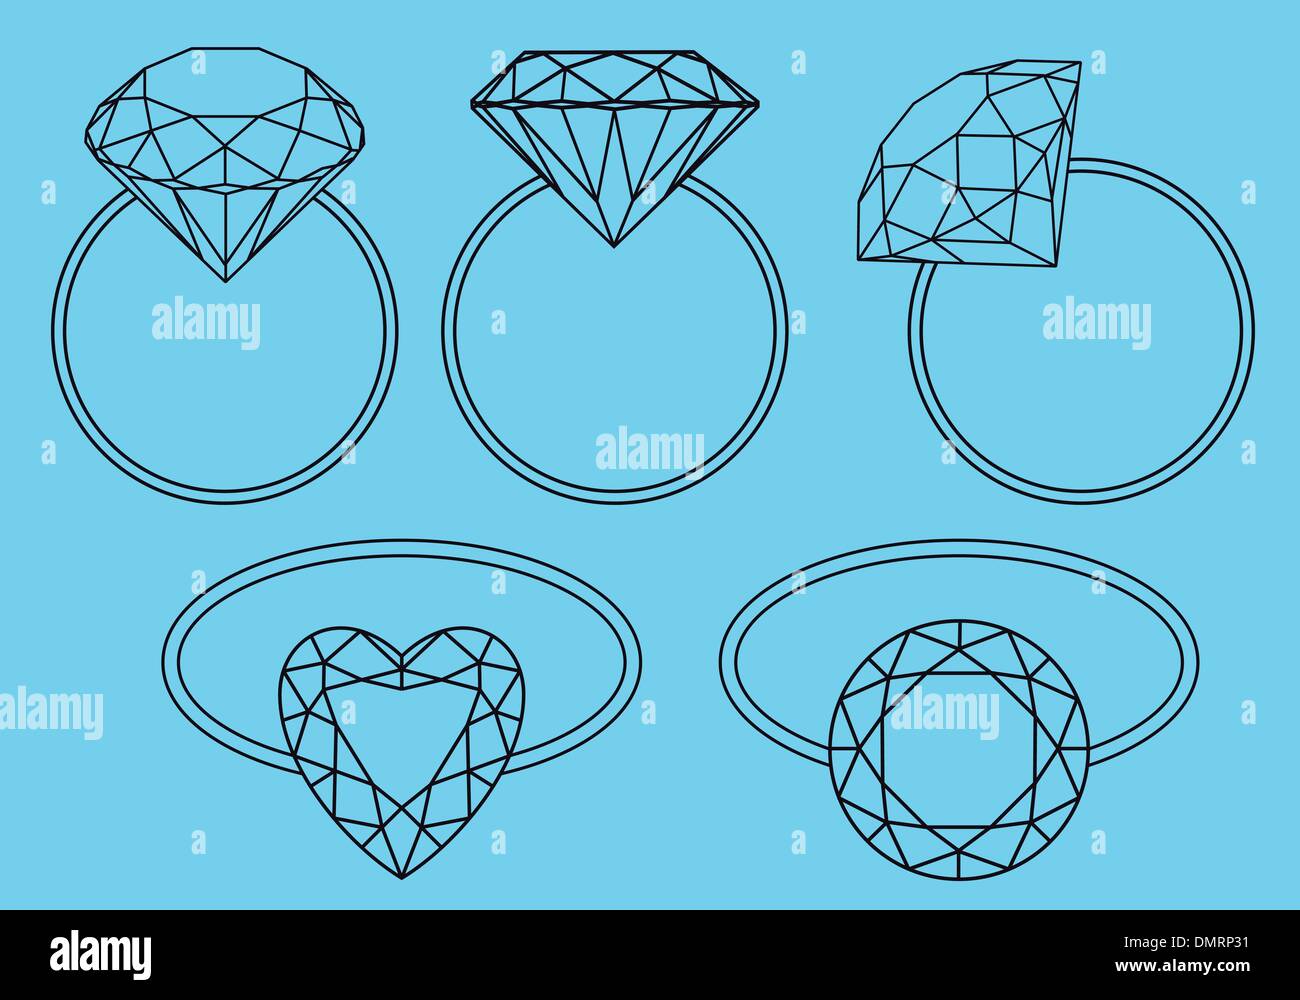 Diamant-Ringe, Vektor-set Stock Vektor